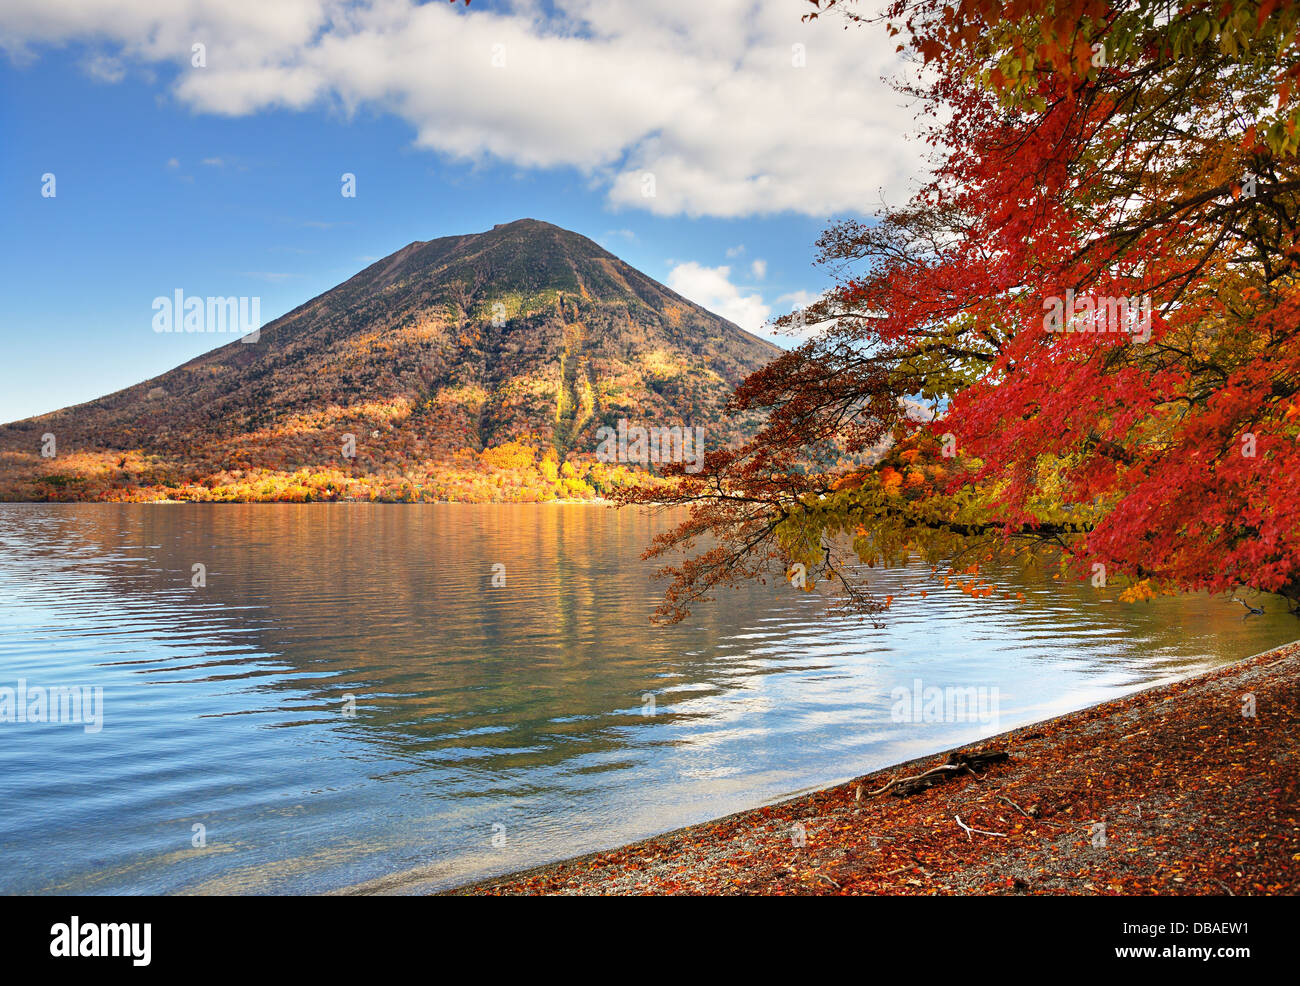 Mountains and Lake Chuzenji in Nikko, Japan Stock Photo - Alamy